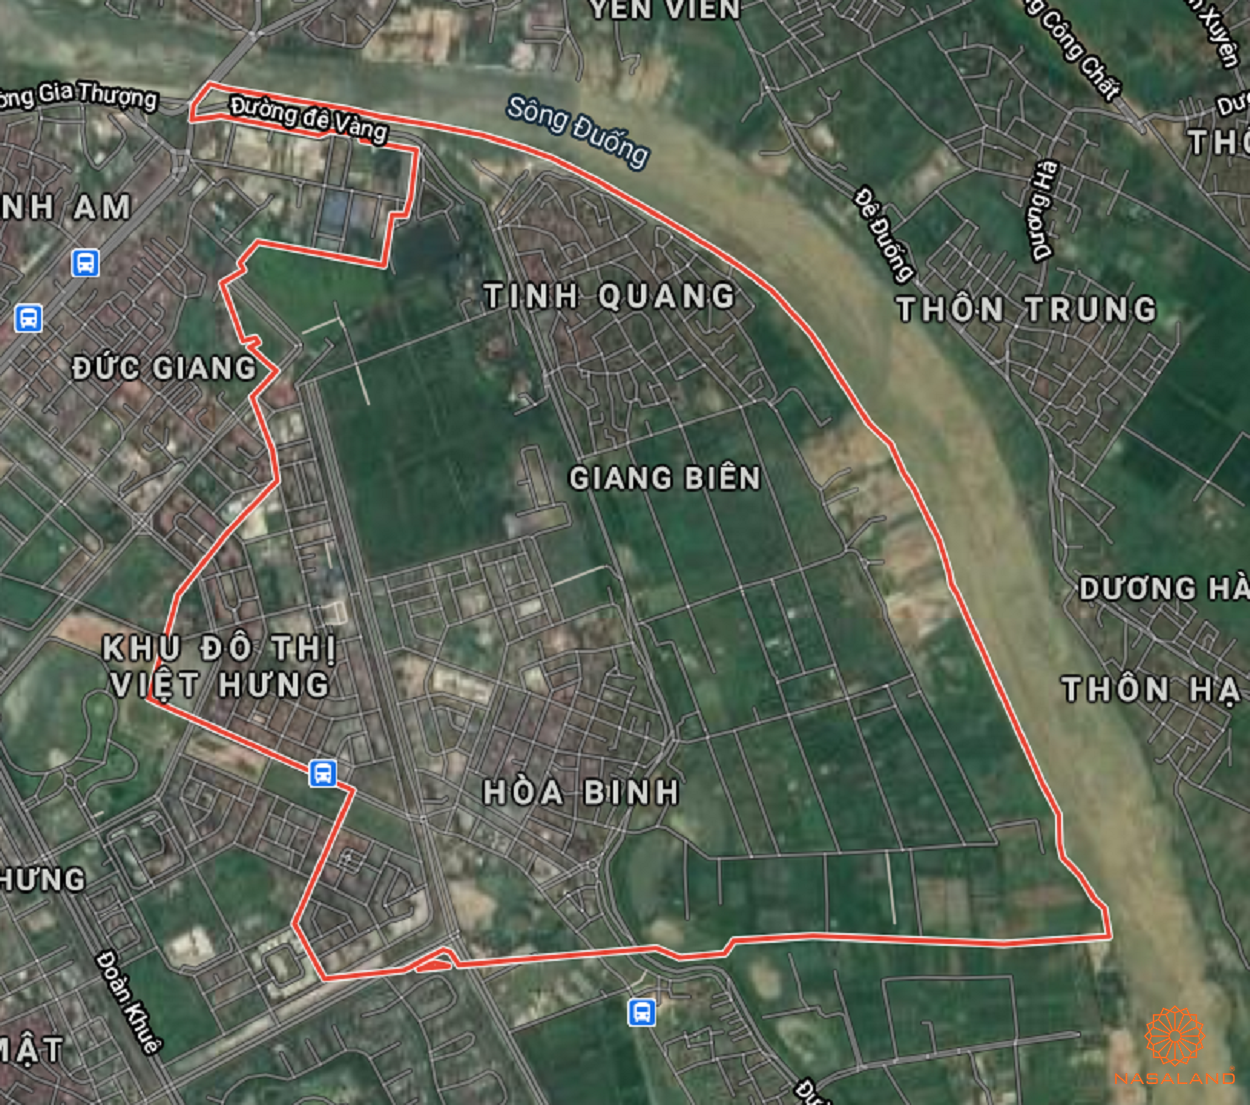 Bản đồ quy hoạch sử dụng đất Phường Giang Biên theo bản đồ quy hoạch sử dụng đất năm 2020 Quận Long Biên, Thành phố Hà Nội.